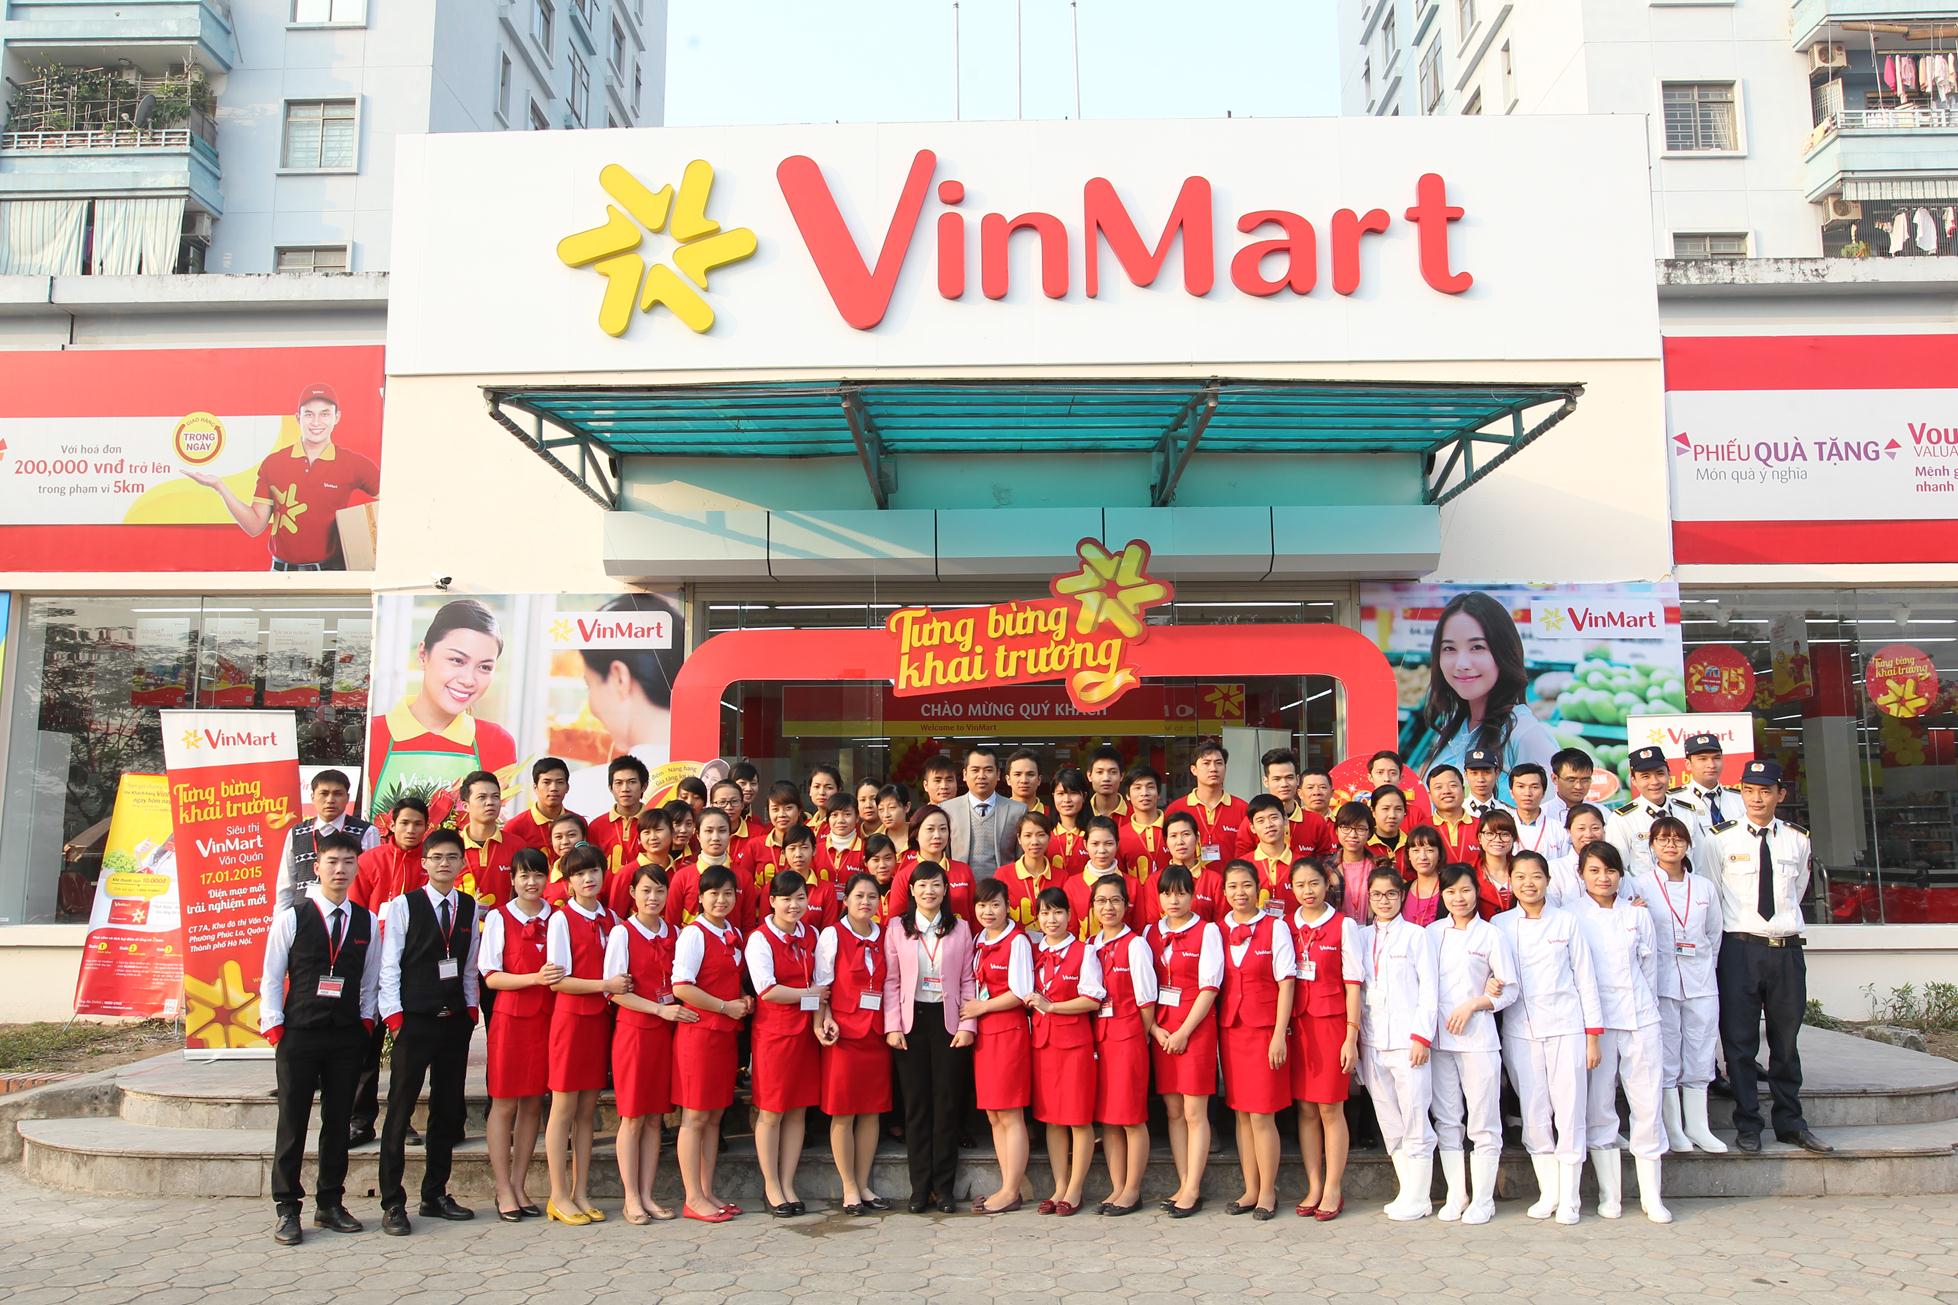 Chuỗi siêu thị Vinmart dày đặc với 100 siêu thị và 50 trung tâm mua sắm trên khắp cả nước. Hệ thống VinMart bao gồm các siêu thị có diện tích từ 3.000m2 đến 15.000m2 và chuỗi VinMart+ là các cửa hàng tiện ích có diện tích từ 150 đến 300m2.